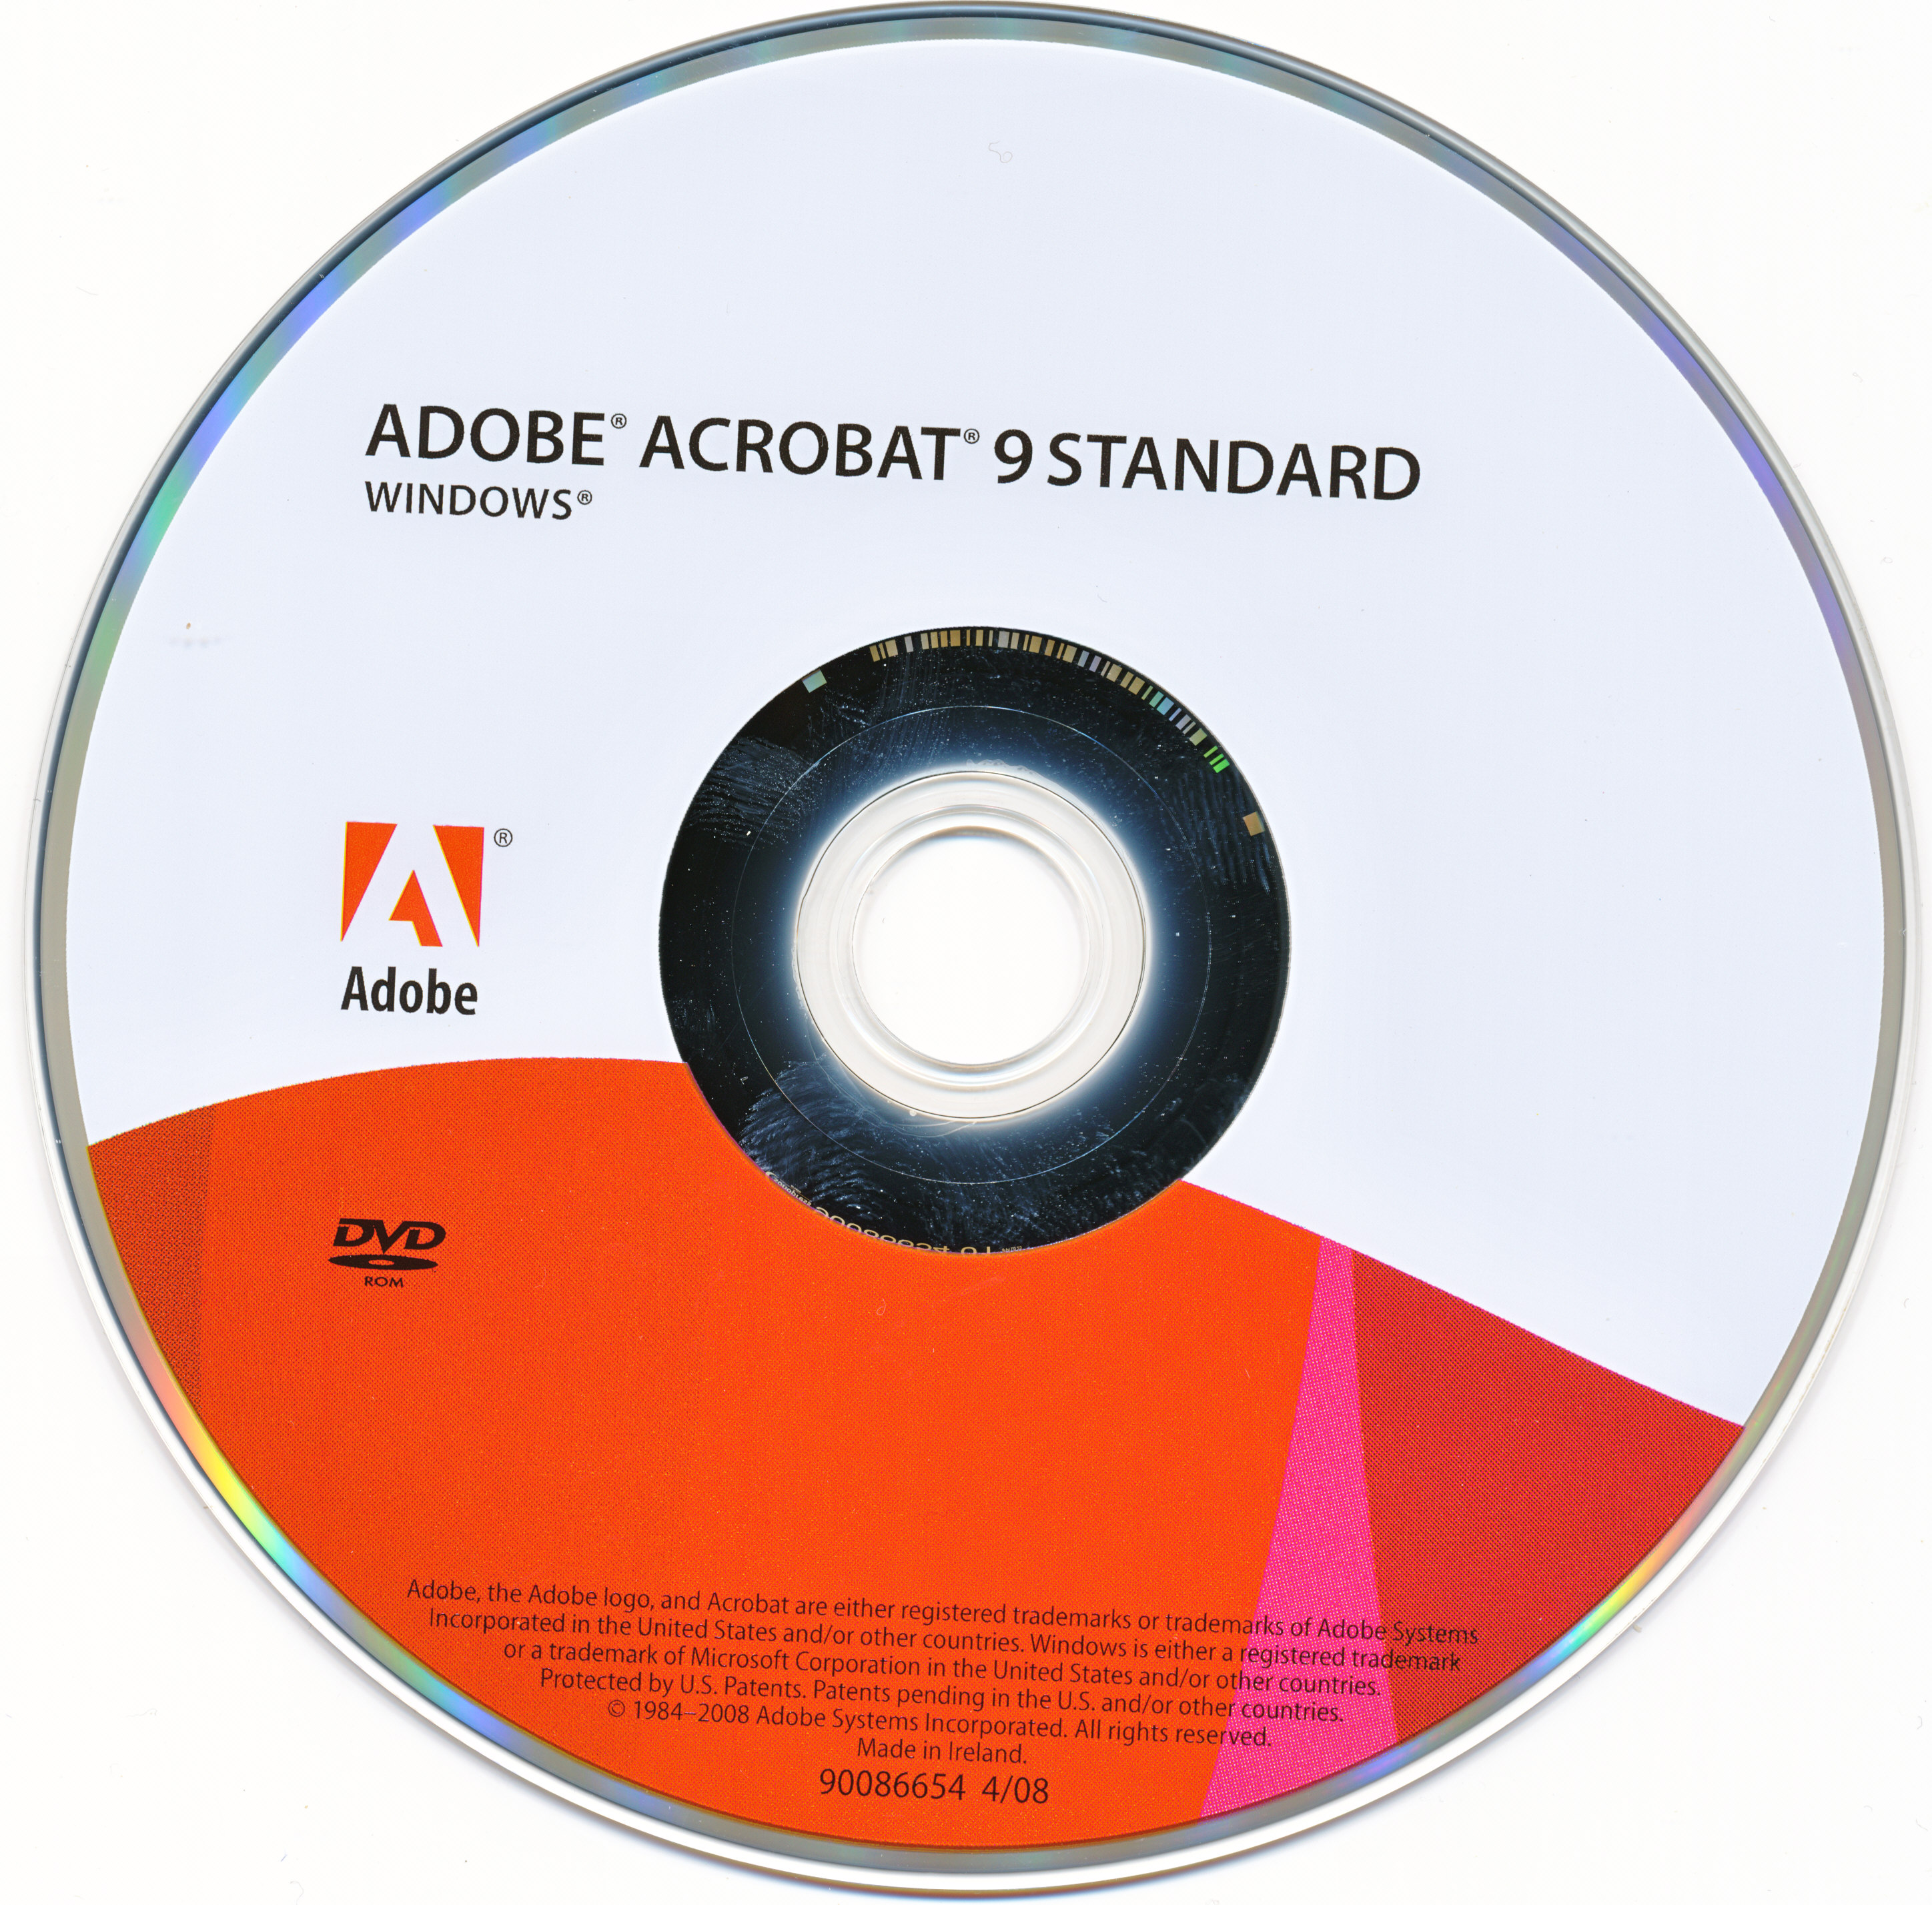 adobe acrobat 9 standard free download full version